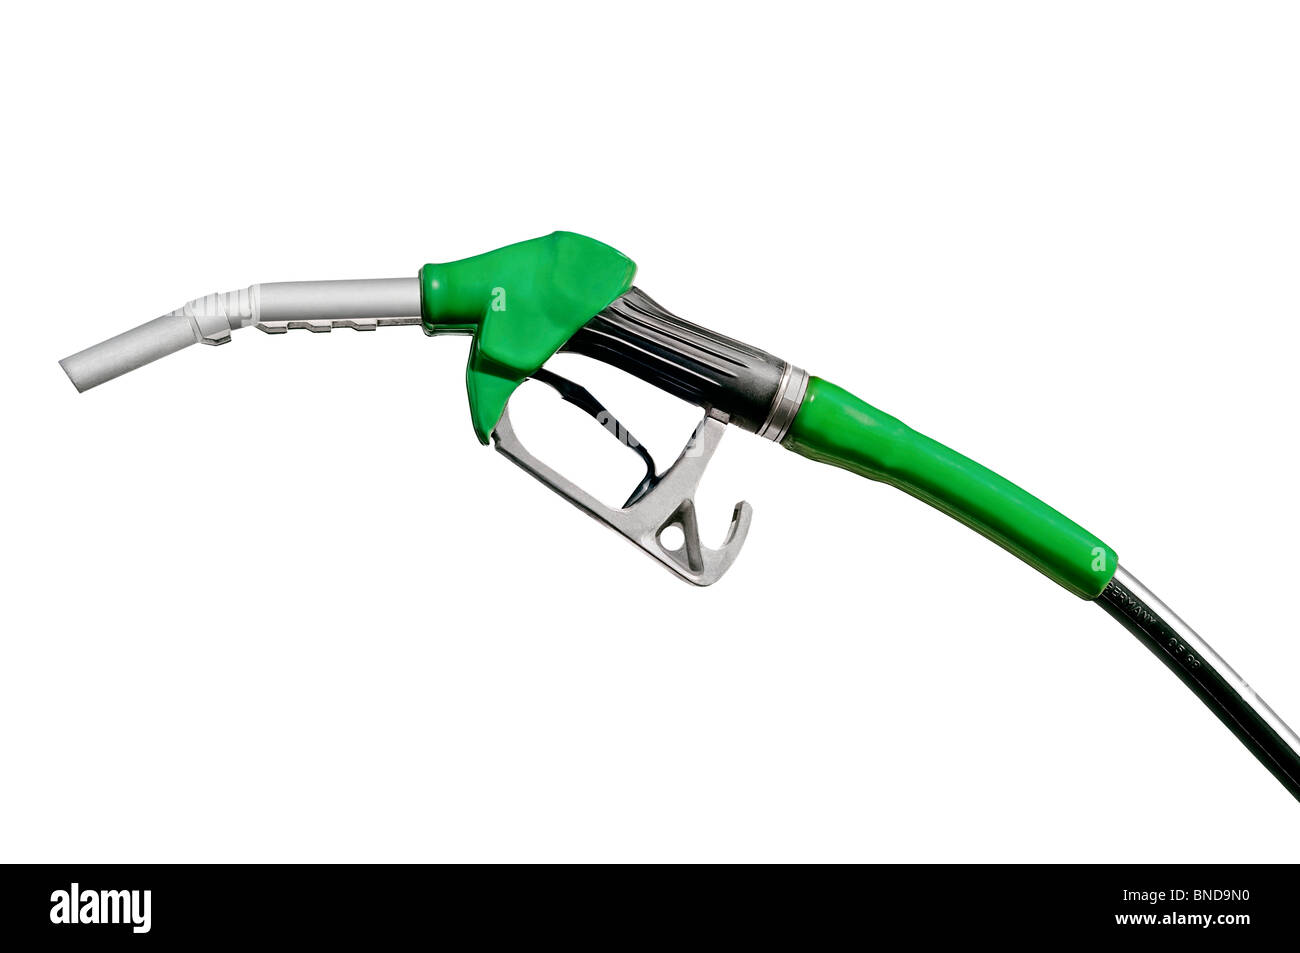 Couper la buse de carburant vert Banque D'Images